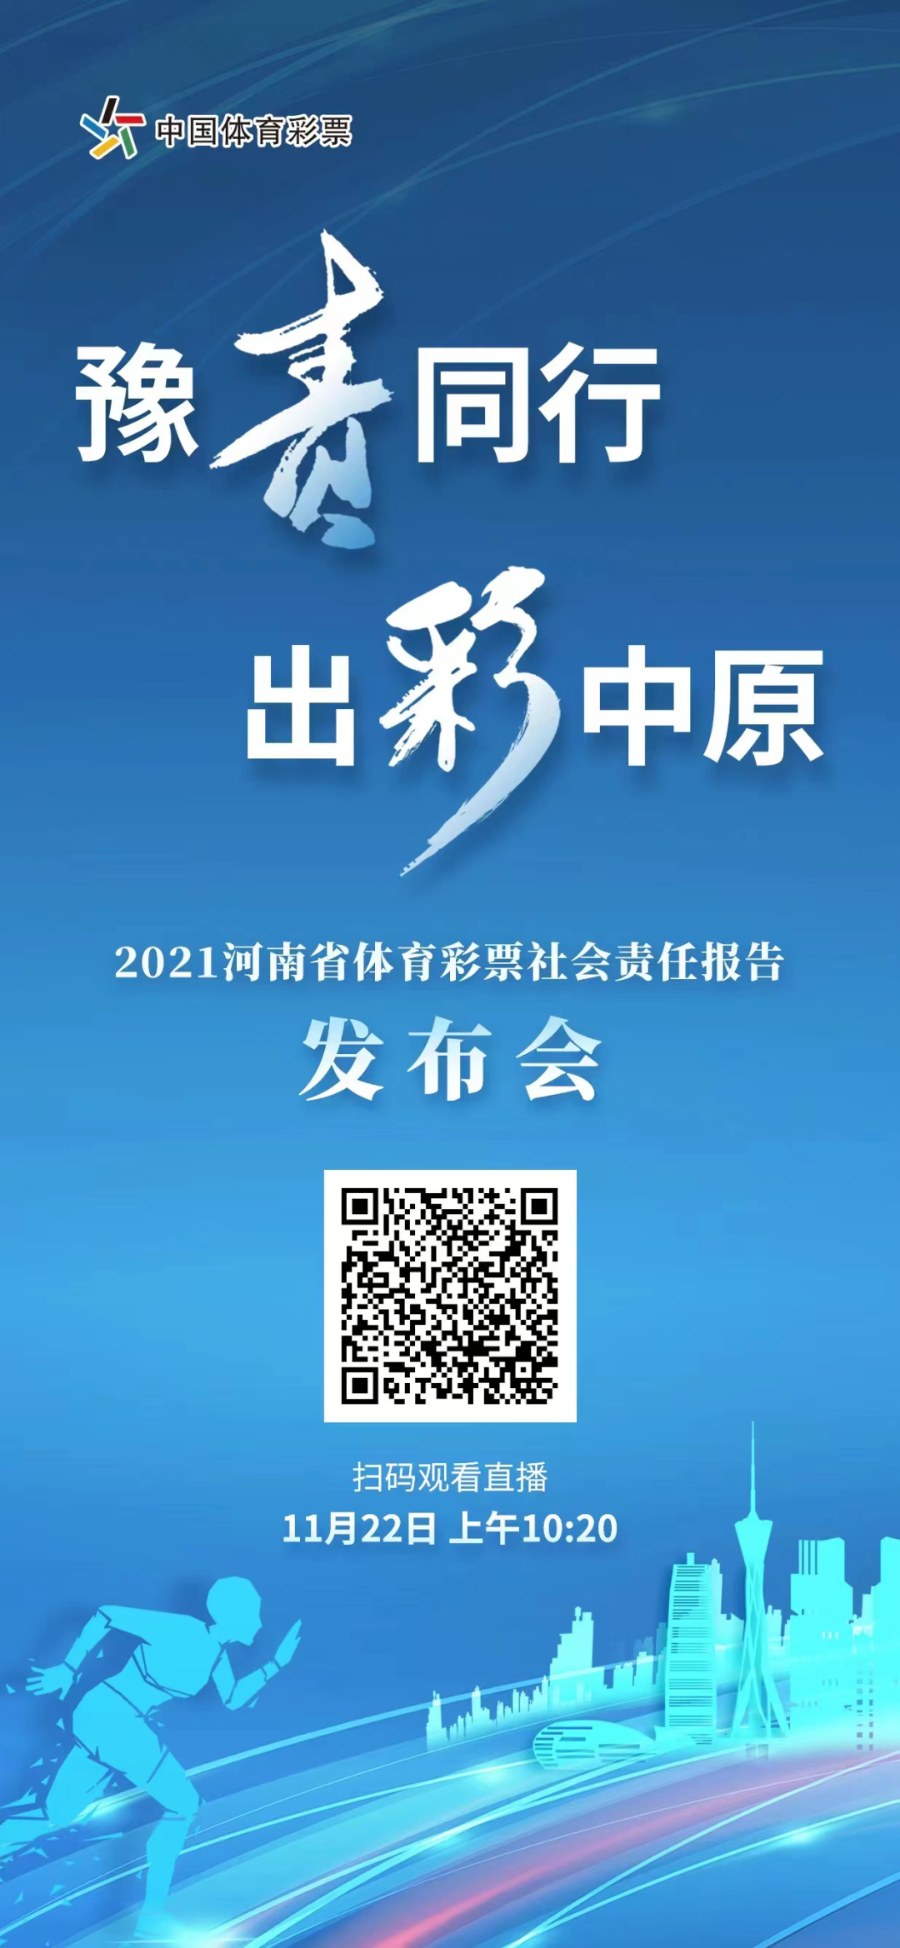 2021河南省体育彩票社会责任报告发布活动